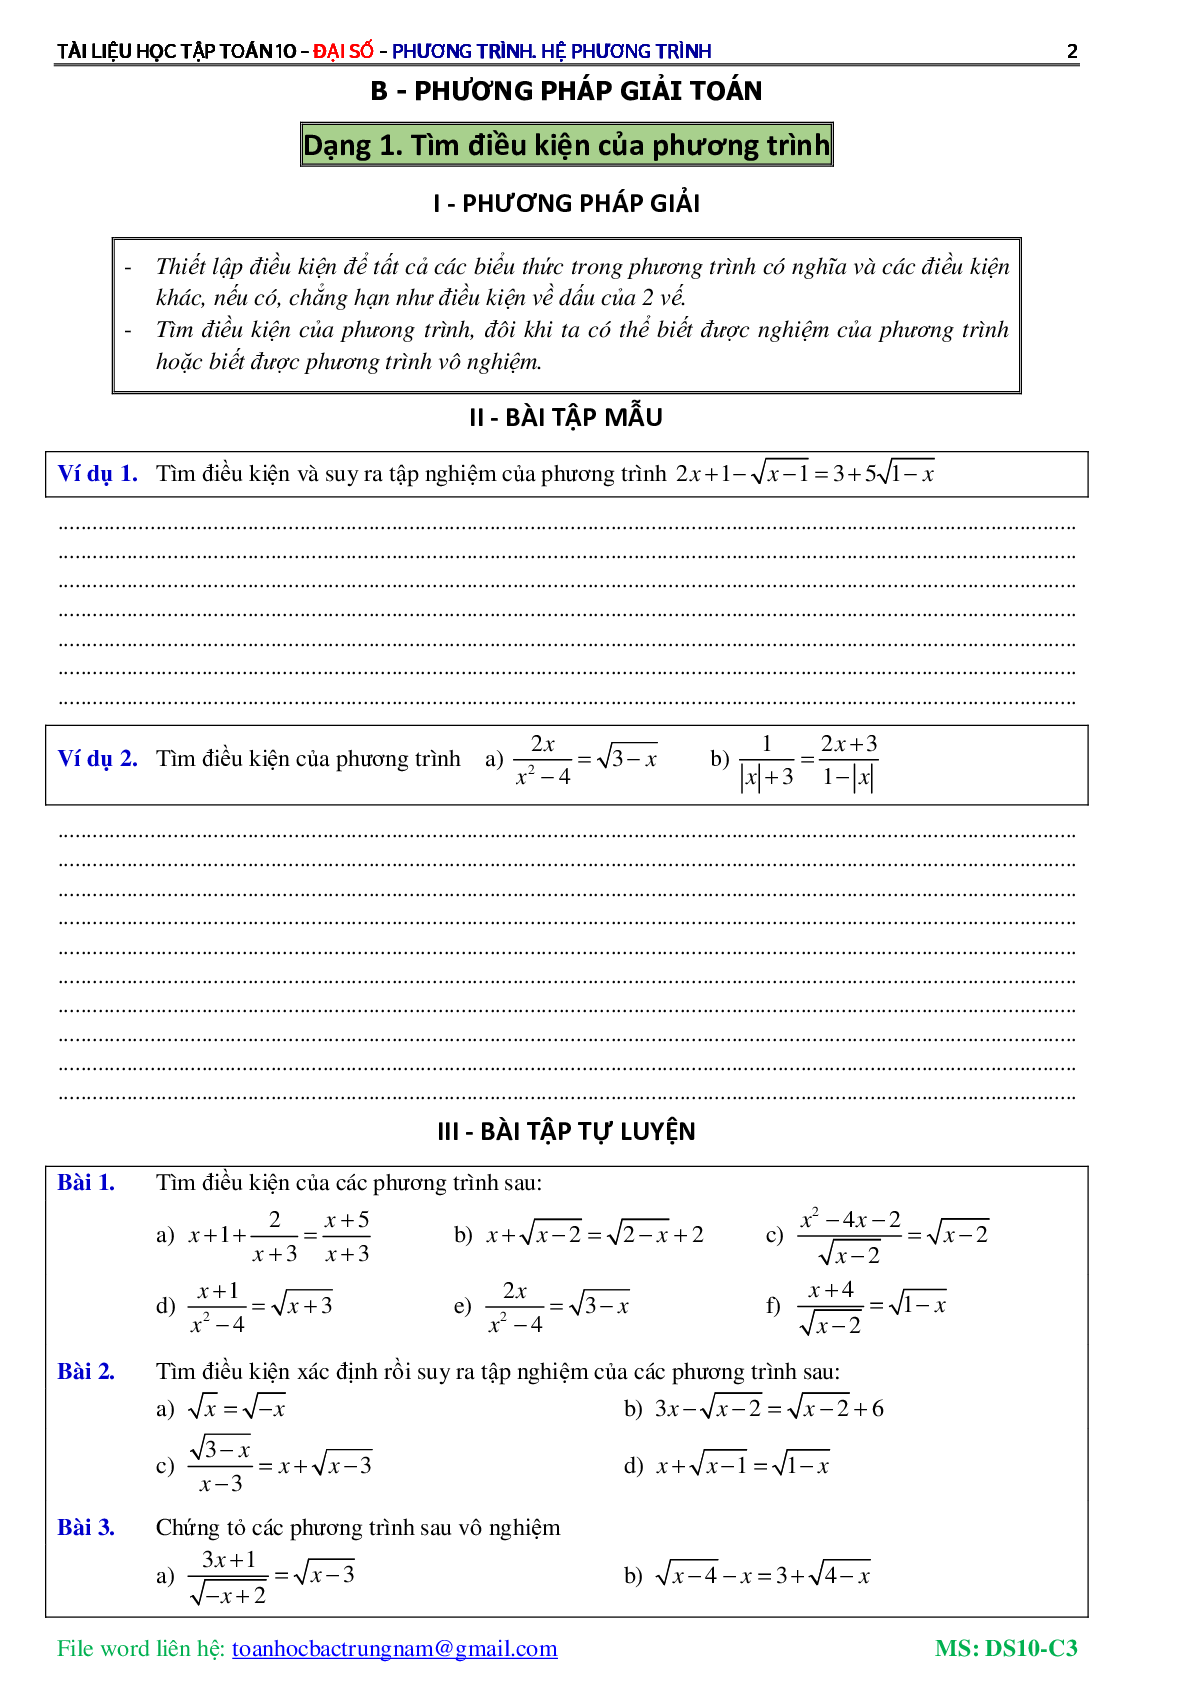 Lý thuyết, bài tập về Phương trình và hệ phương trình có đáp án (trang 3)